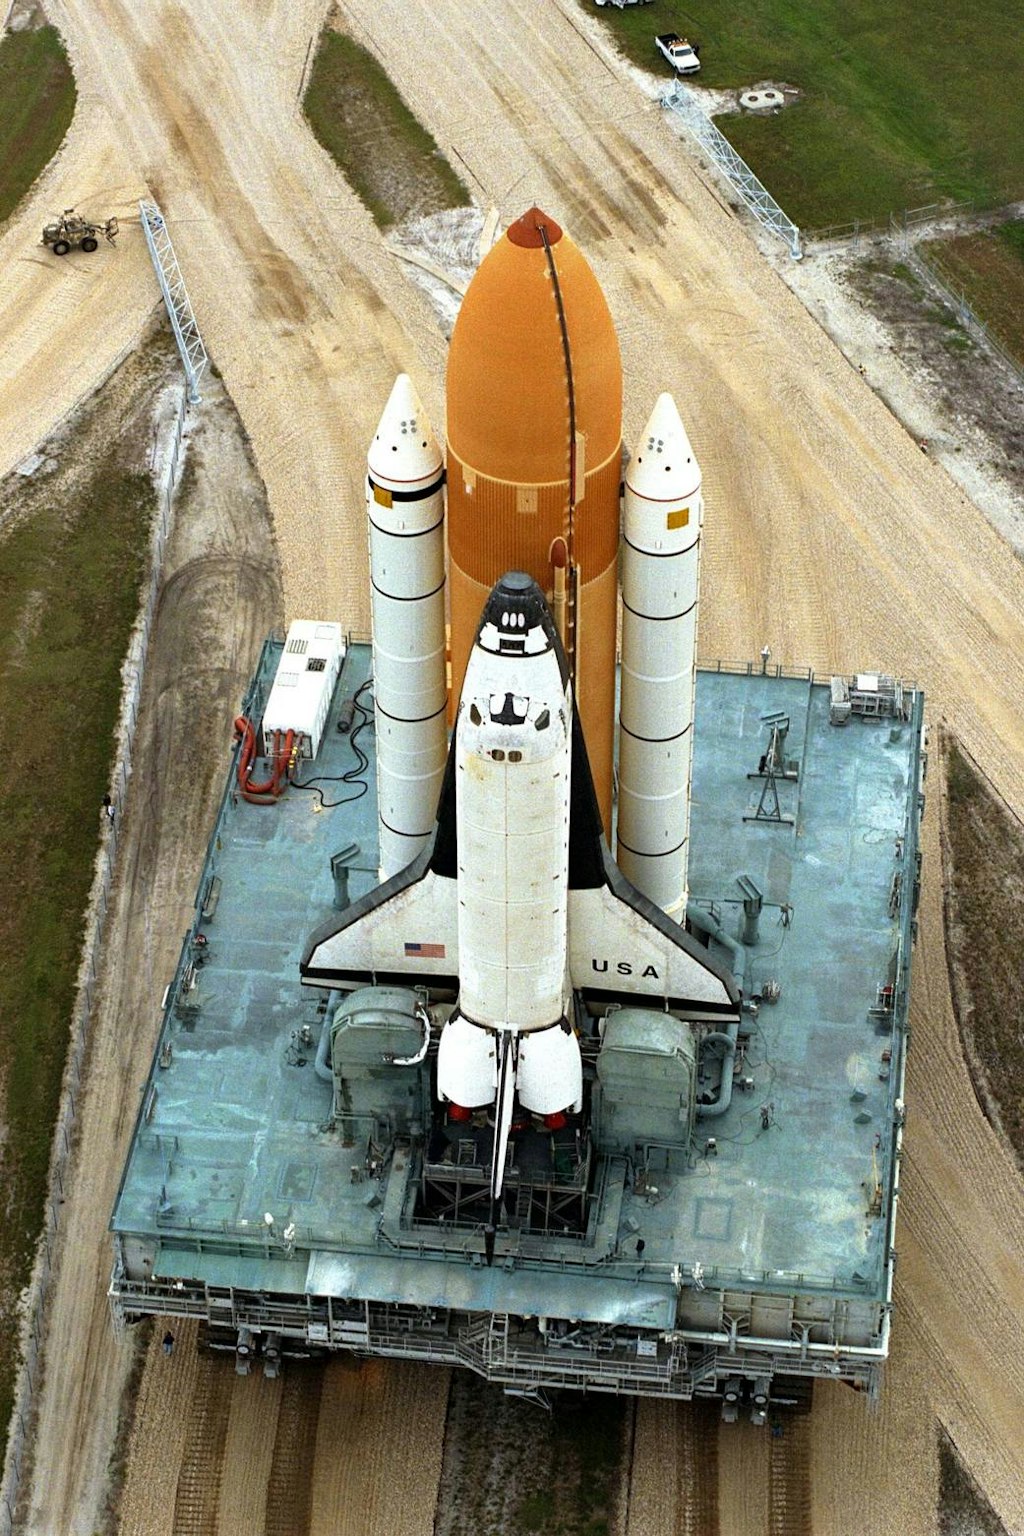 Slika 2. Gosenični transporterji so se redno uporabljali tudi za prevoz Space Shuttle vozil.